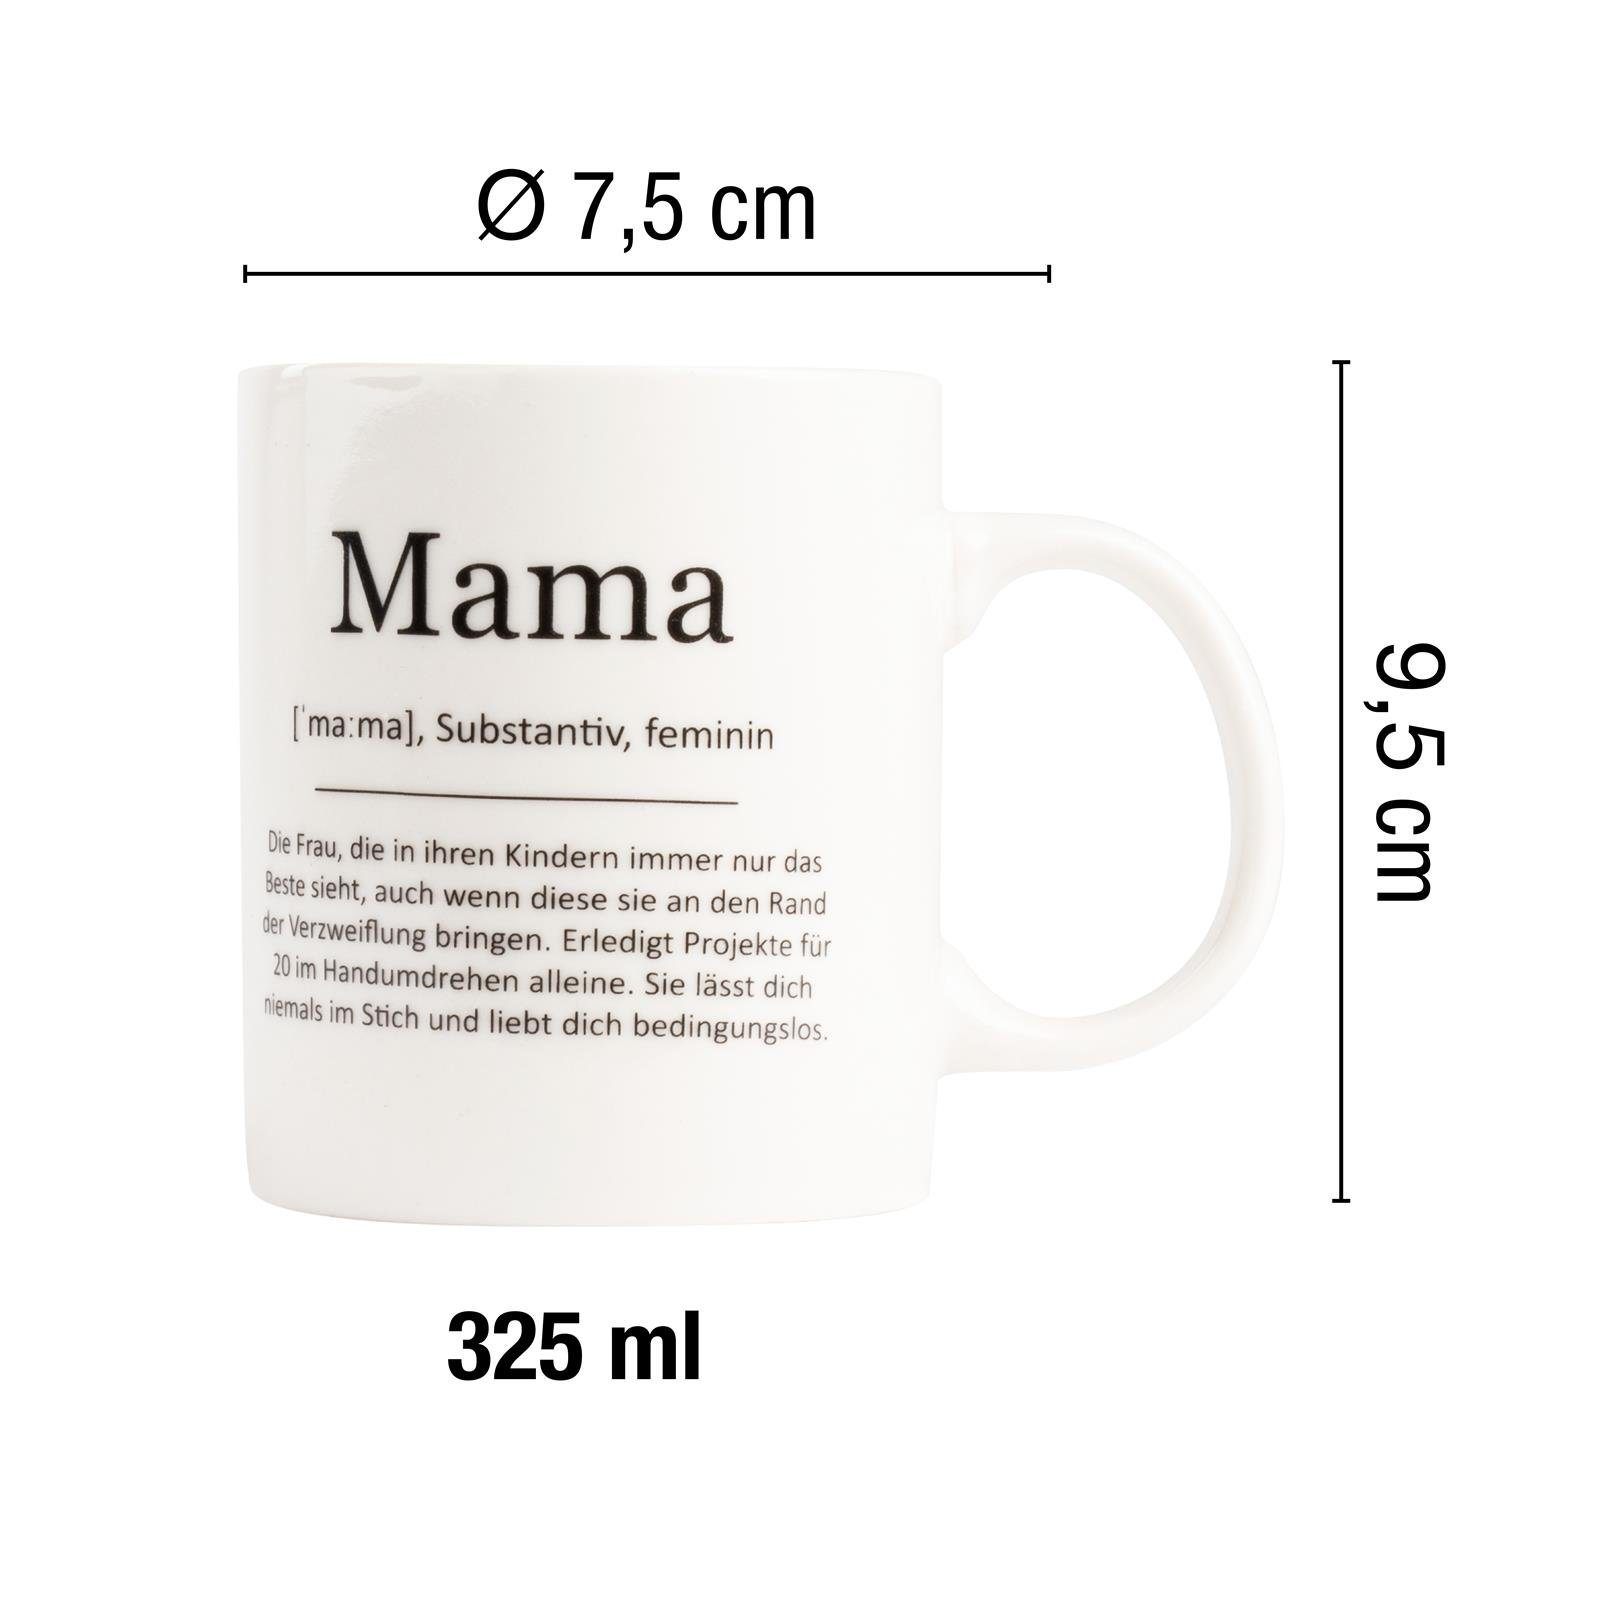 ILP Tasse Kaffeebecher mit Mama Spruch